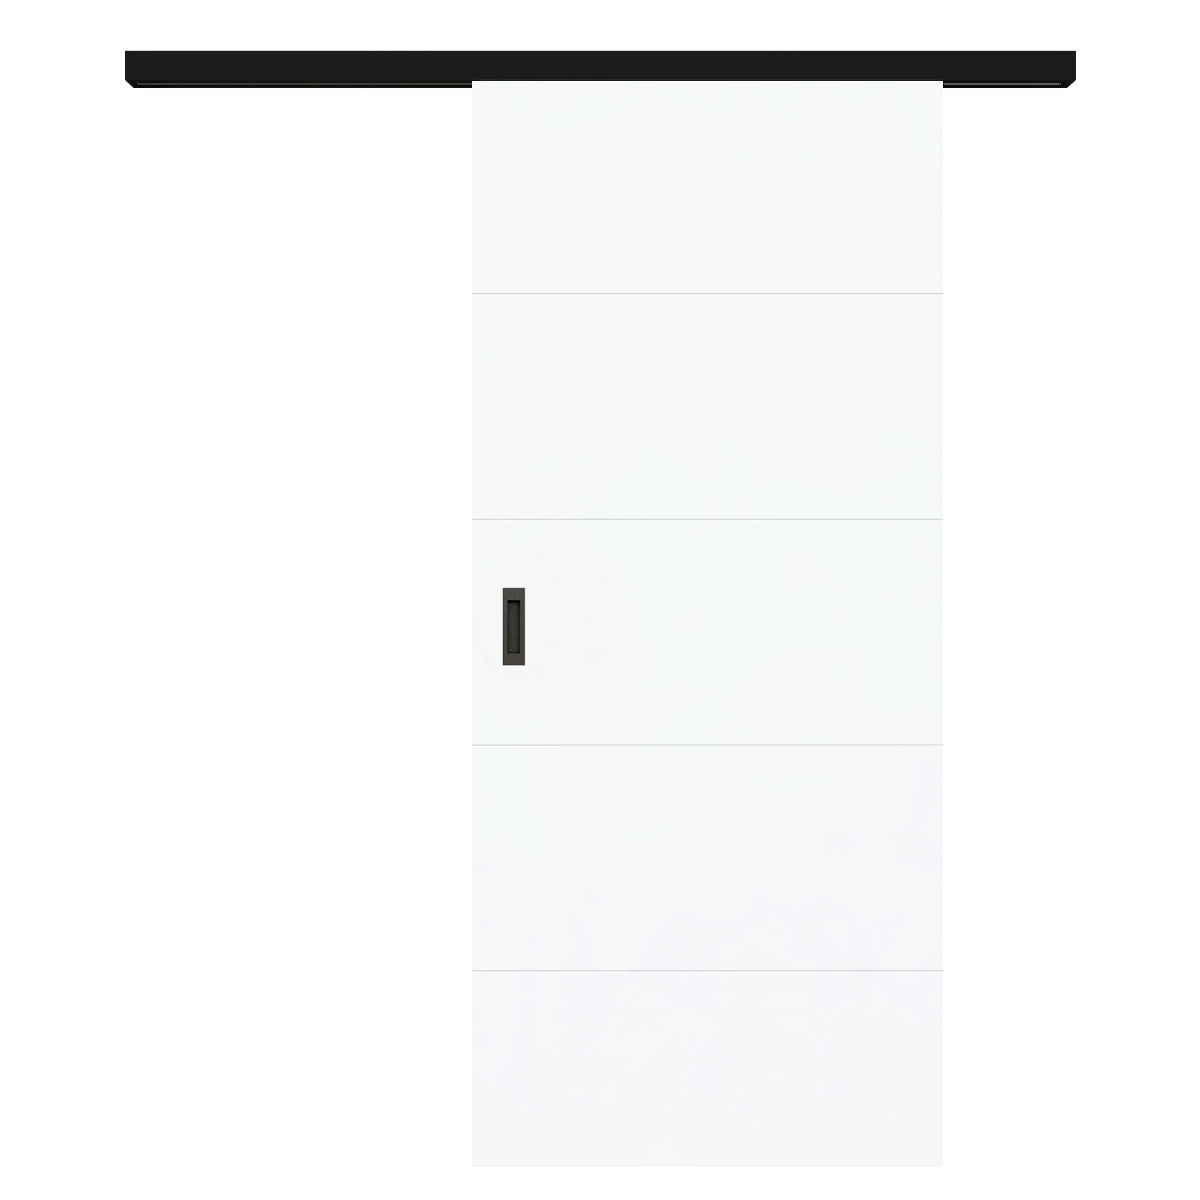 Schiebetür für Set mit schwarzem Laufkasten brillant-weiß modern mit 4 Rillen - Modell Designtür Q43